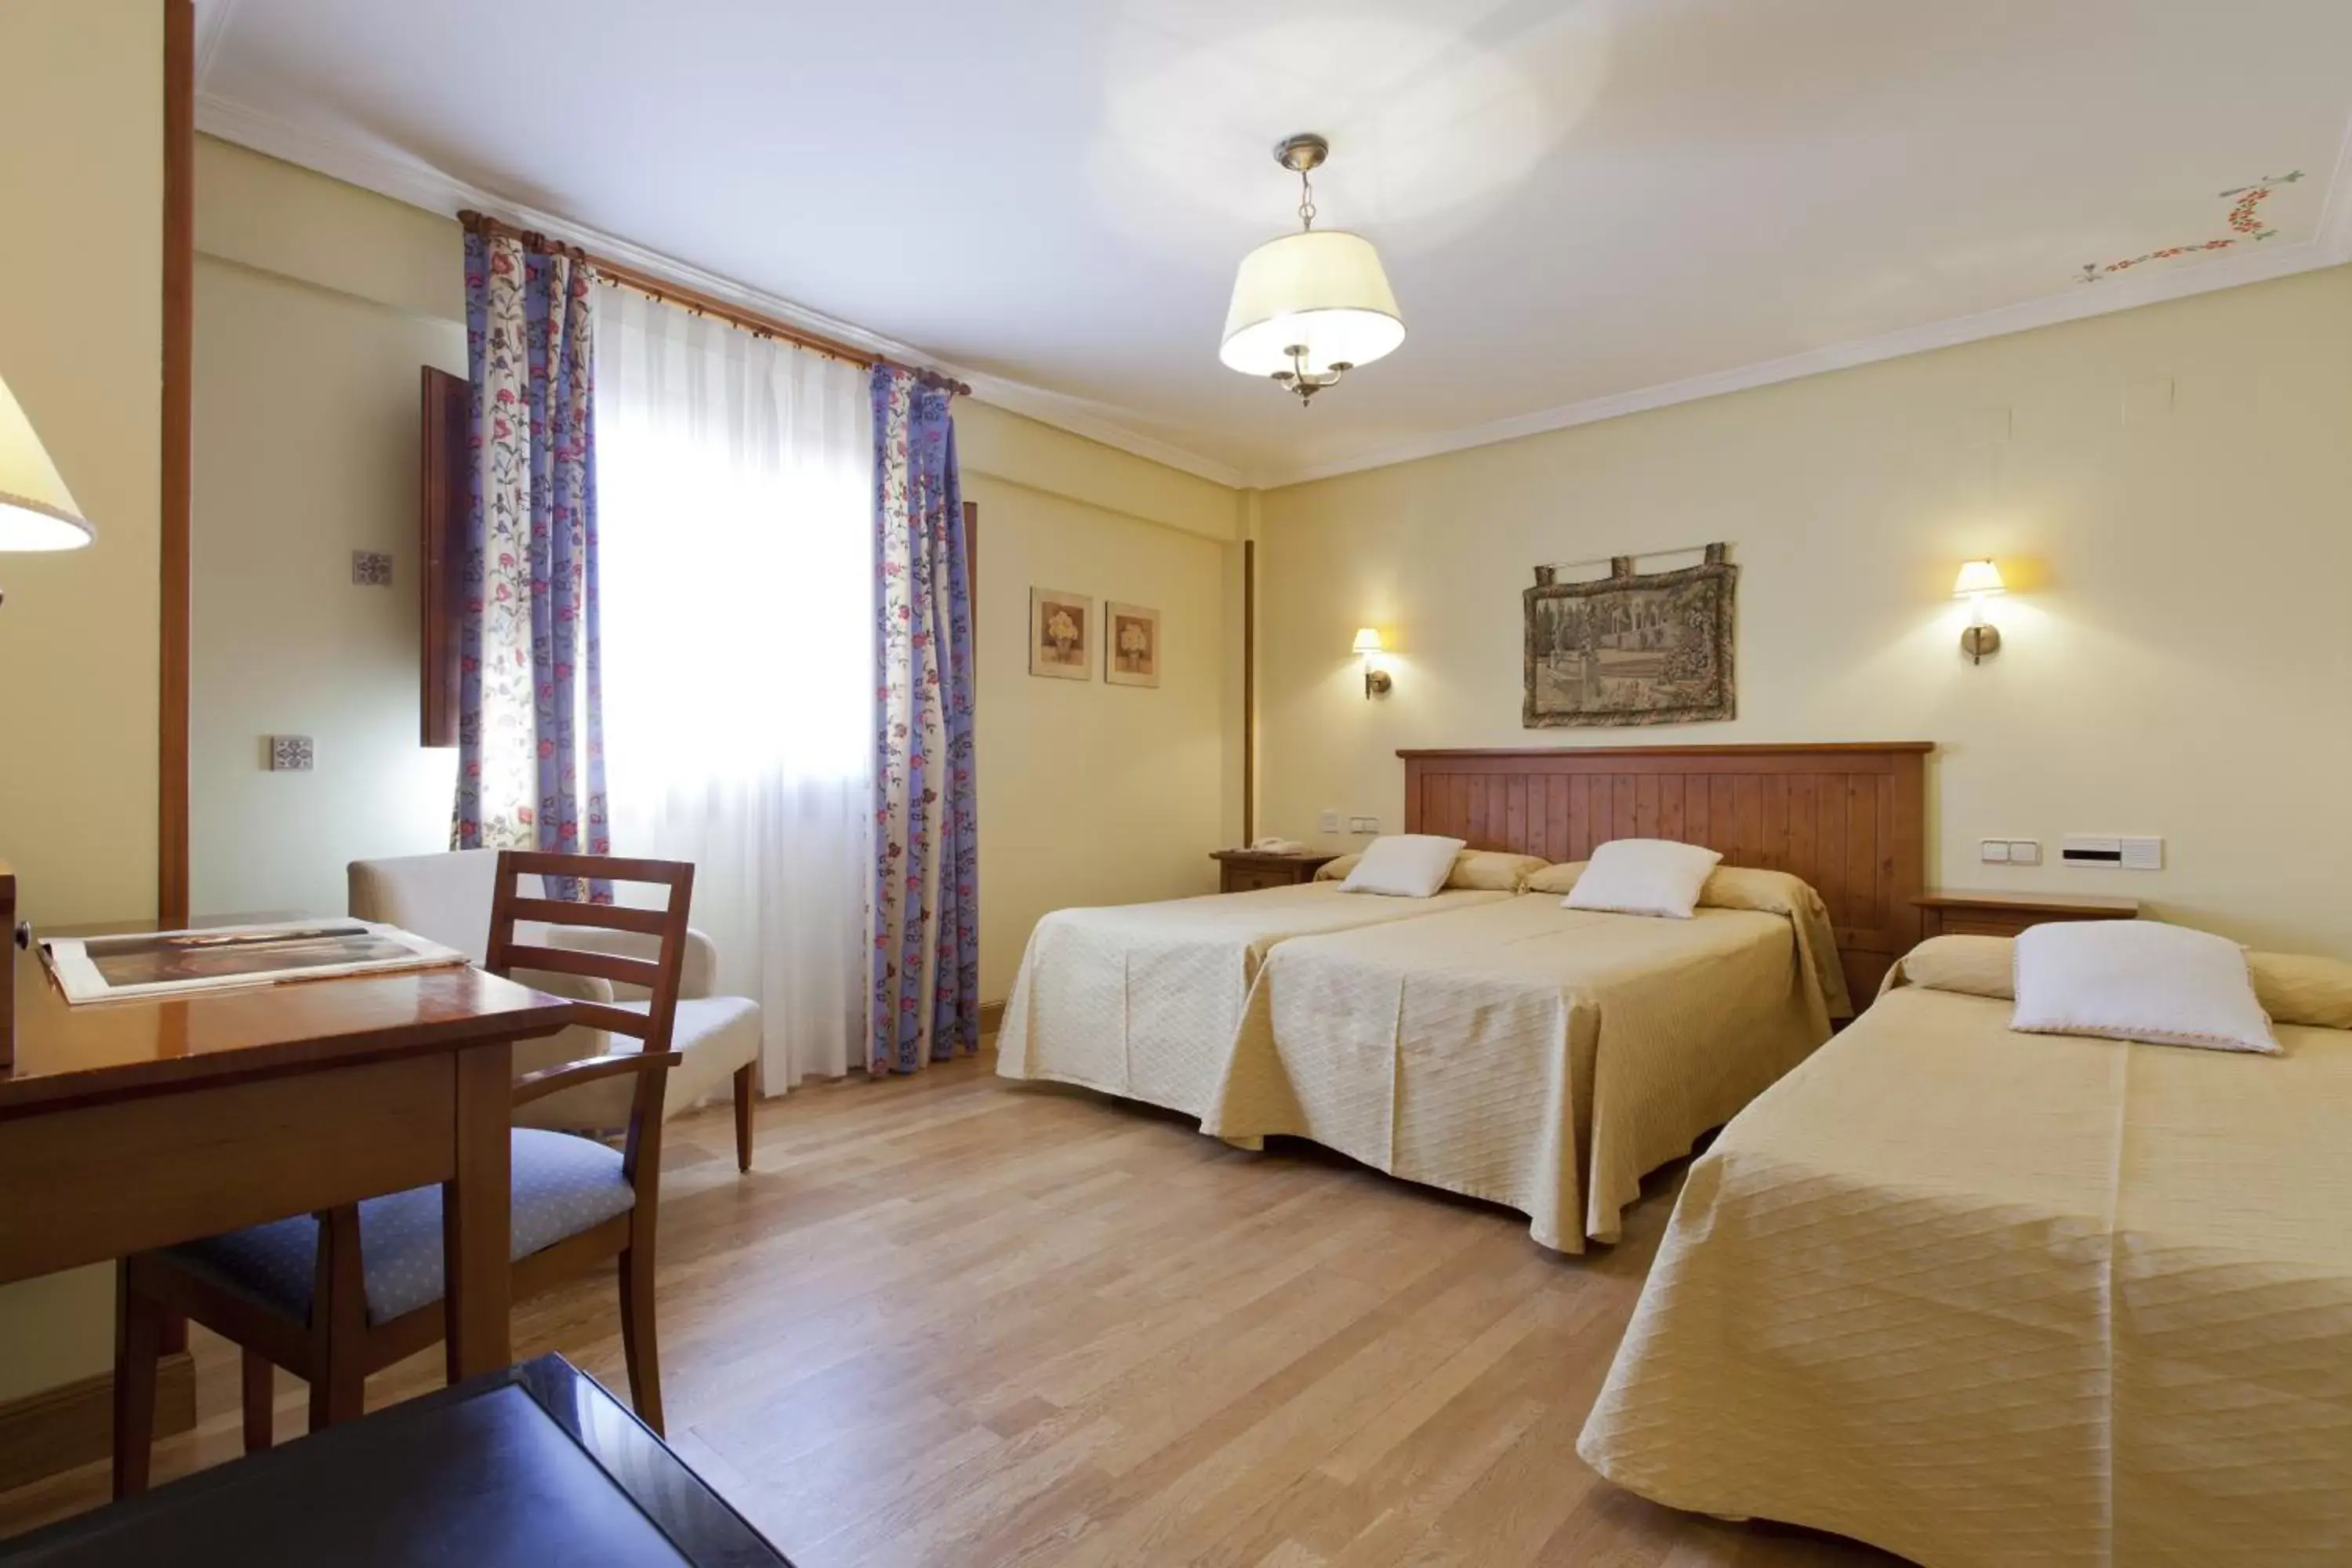 Triple Room in Hotel Casona de la Reyna